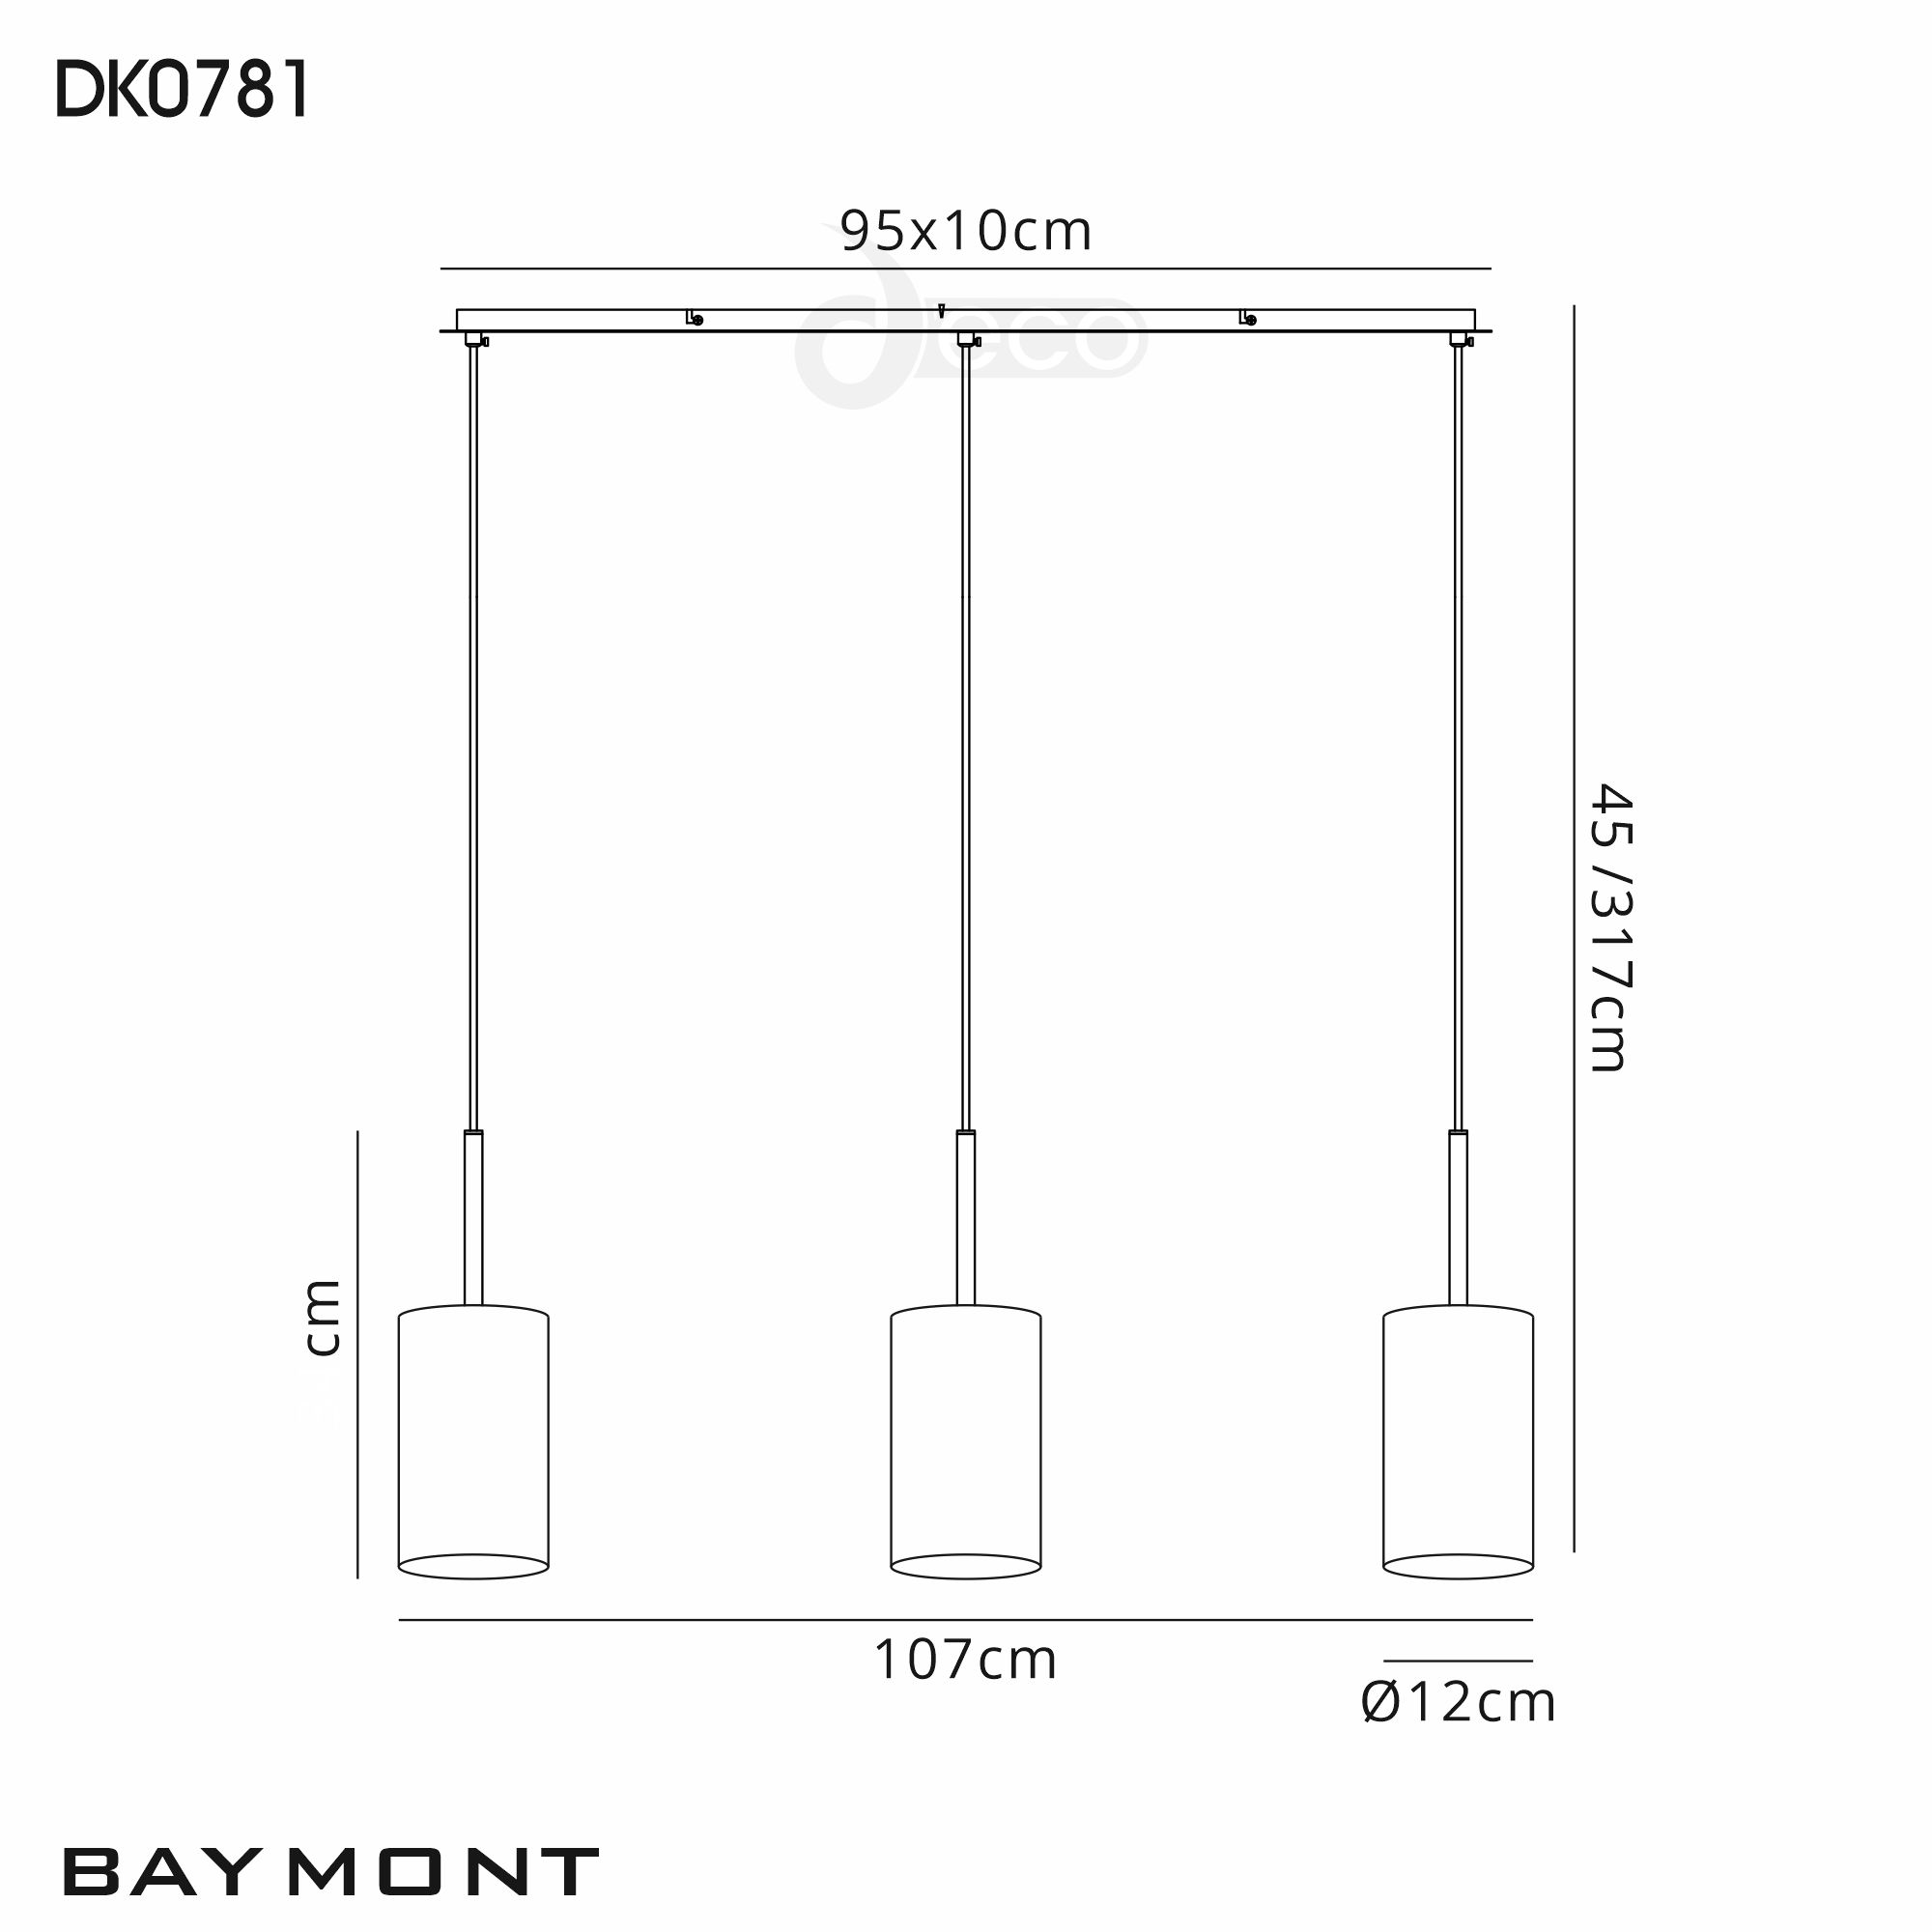 DK0781  Baymont 12cm Shade 3 Light Pendant Satin Nickel; White